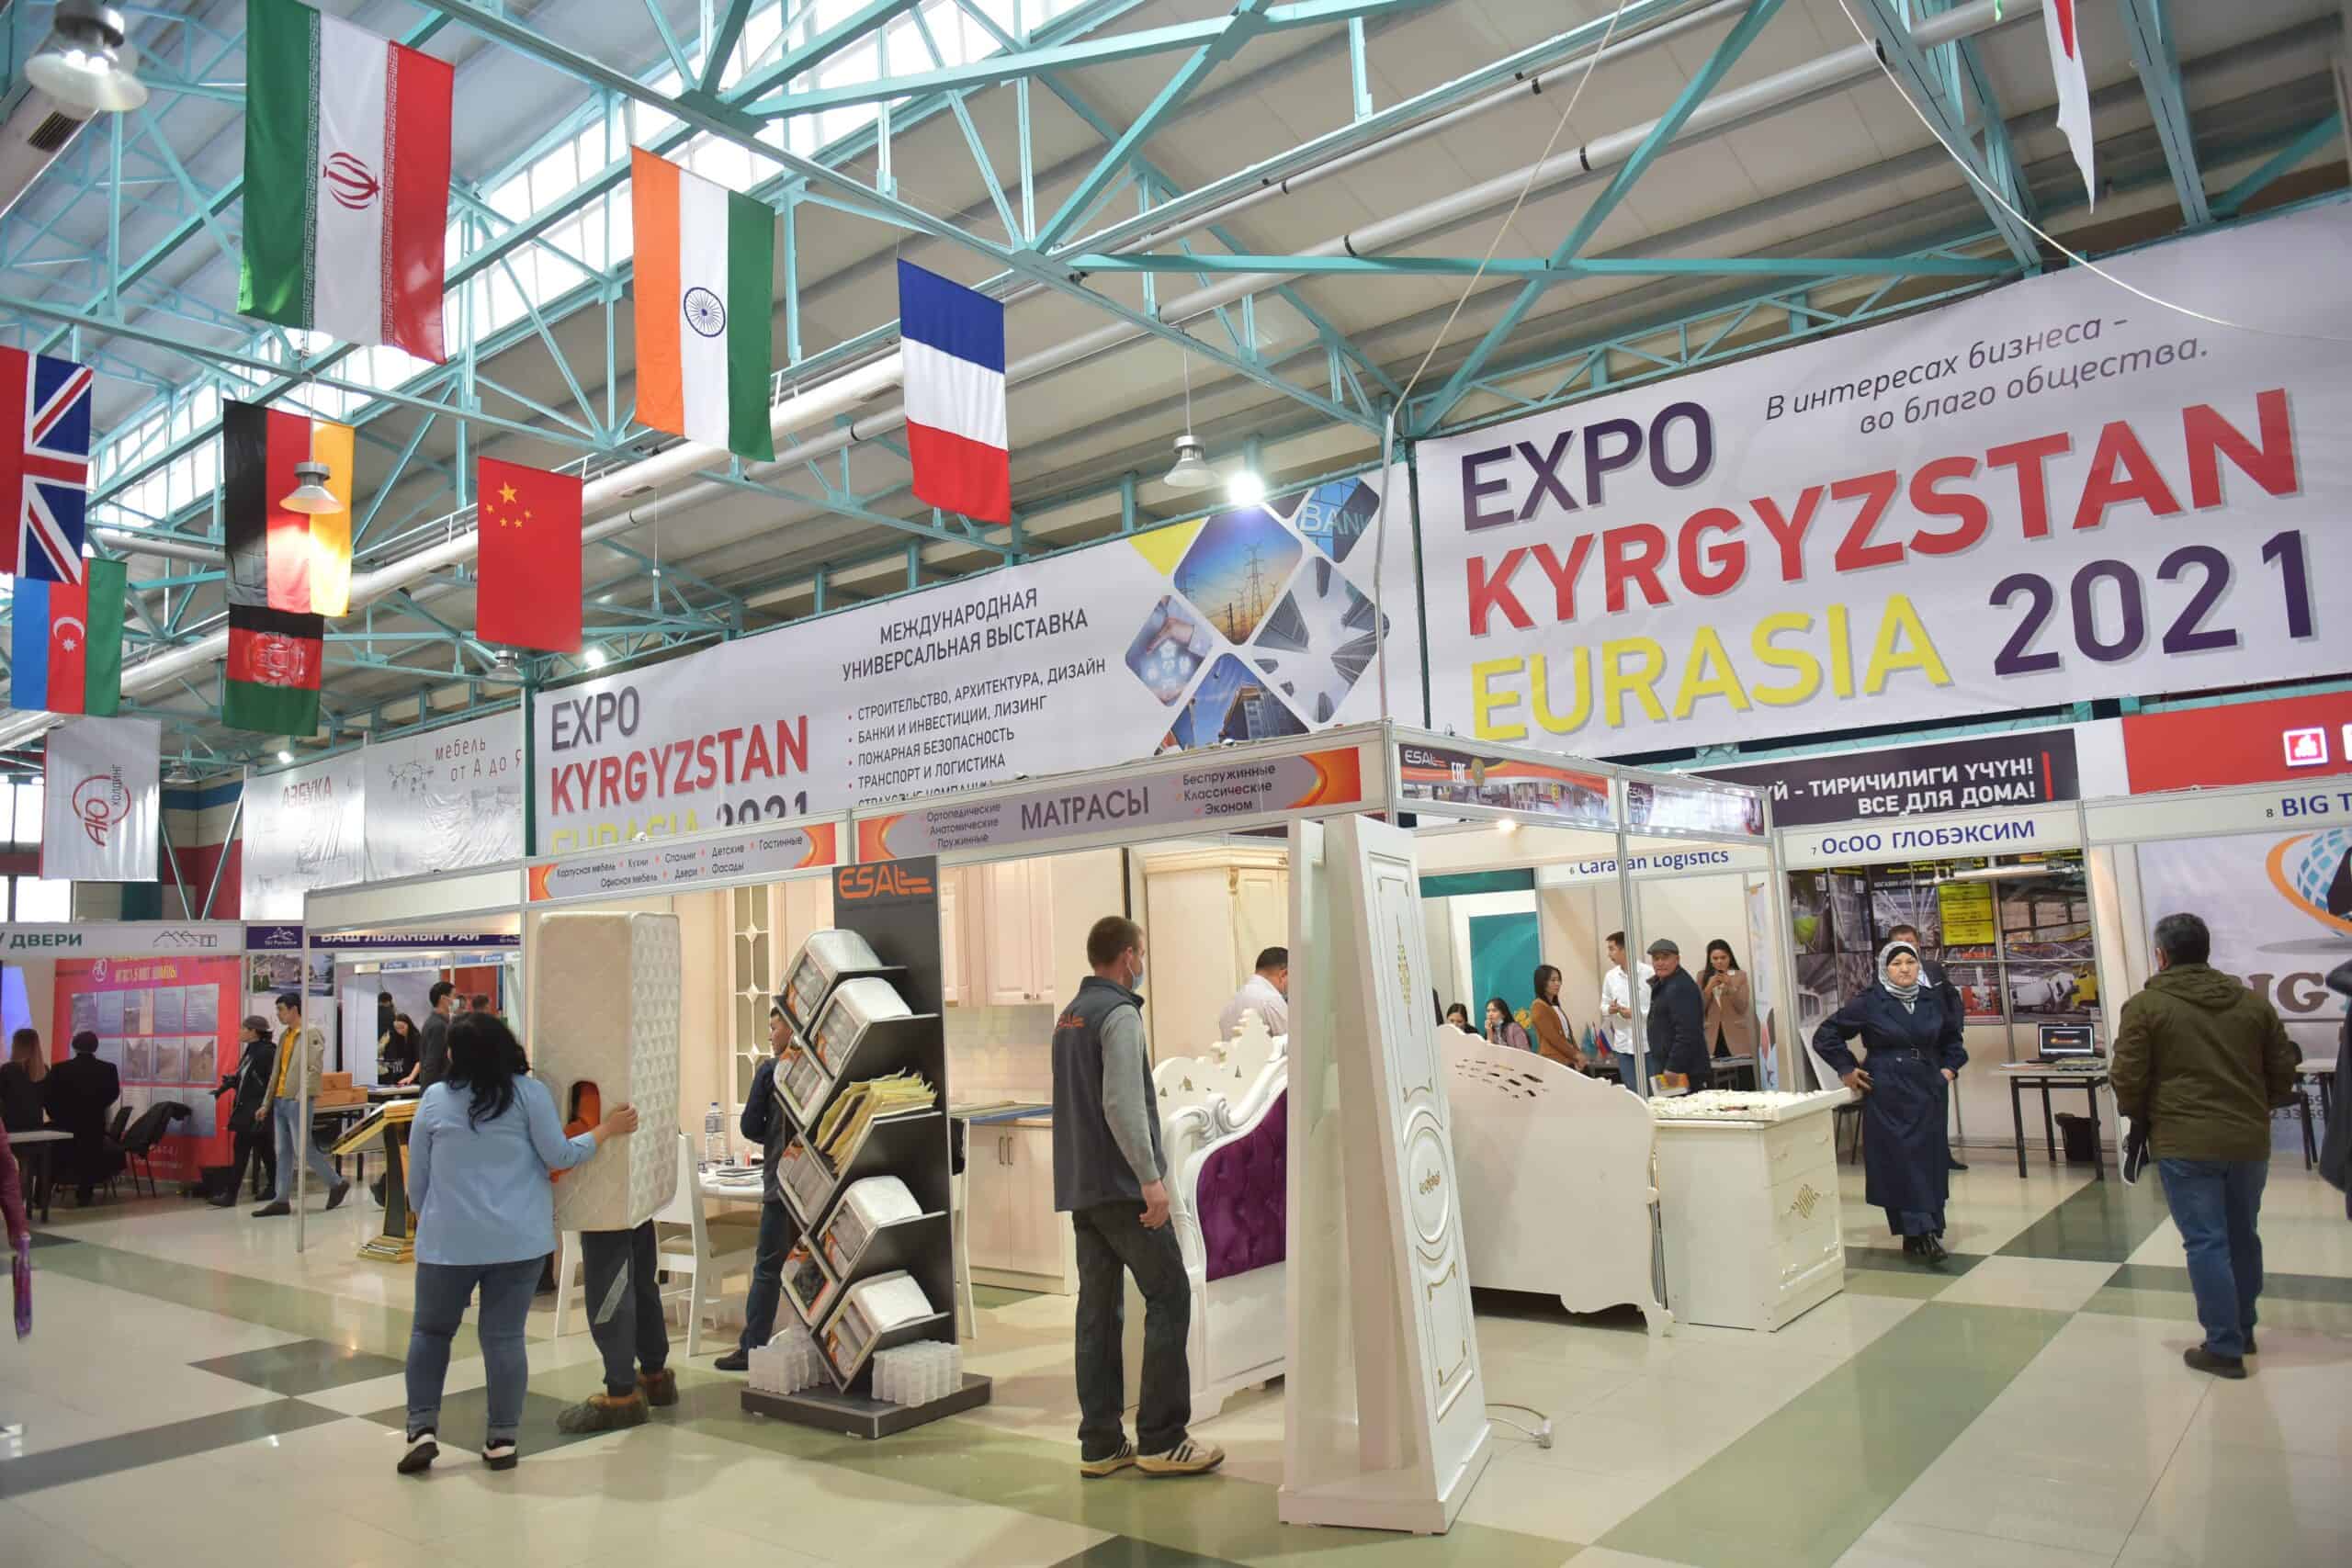 Выставка Expo. Международной промышленной выставки «Expo-Russia Kyrgyzstan 2021. Выставка «Expo-Russia Kyrgyzstan». Выставка Expo Eurasia Kyrgyzstan 2022.